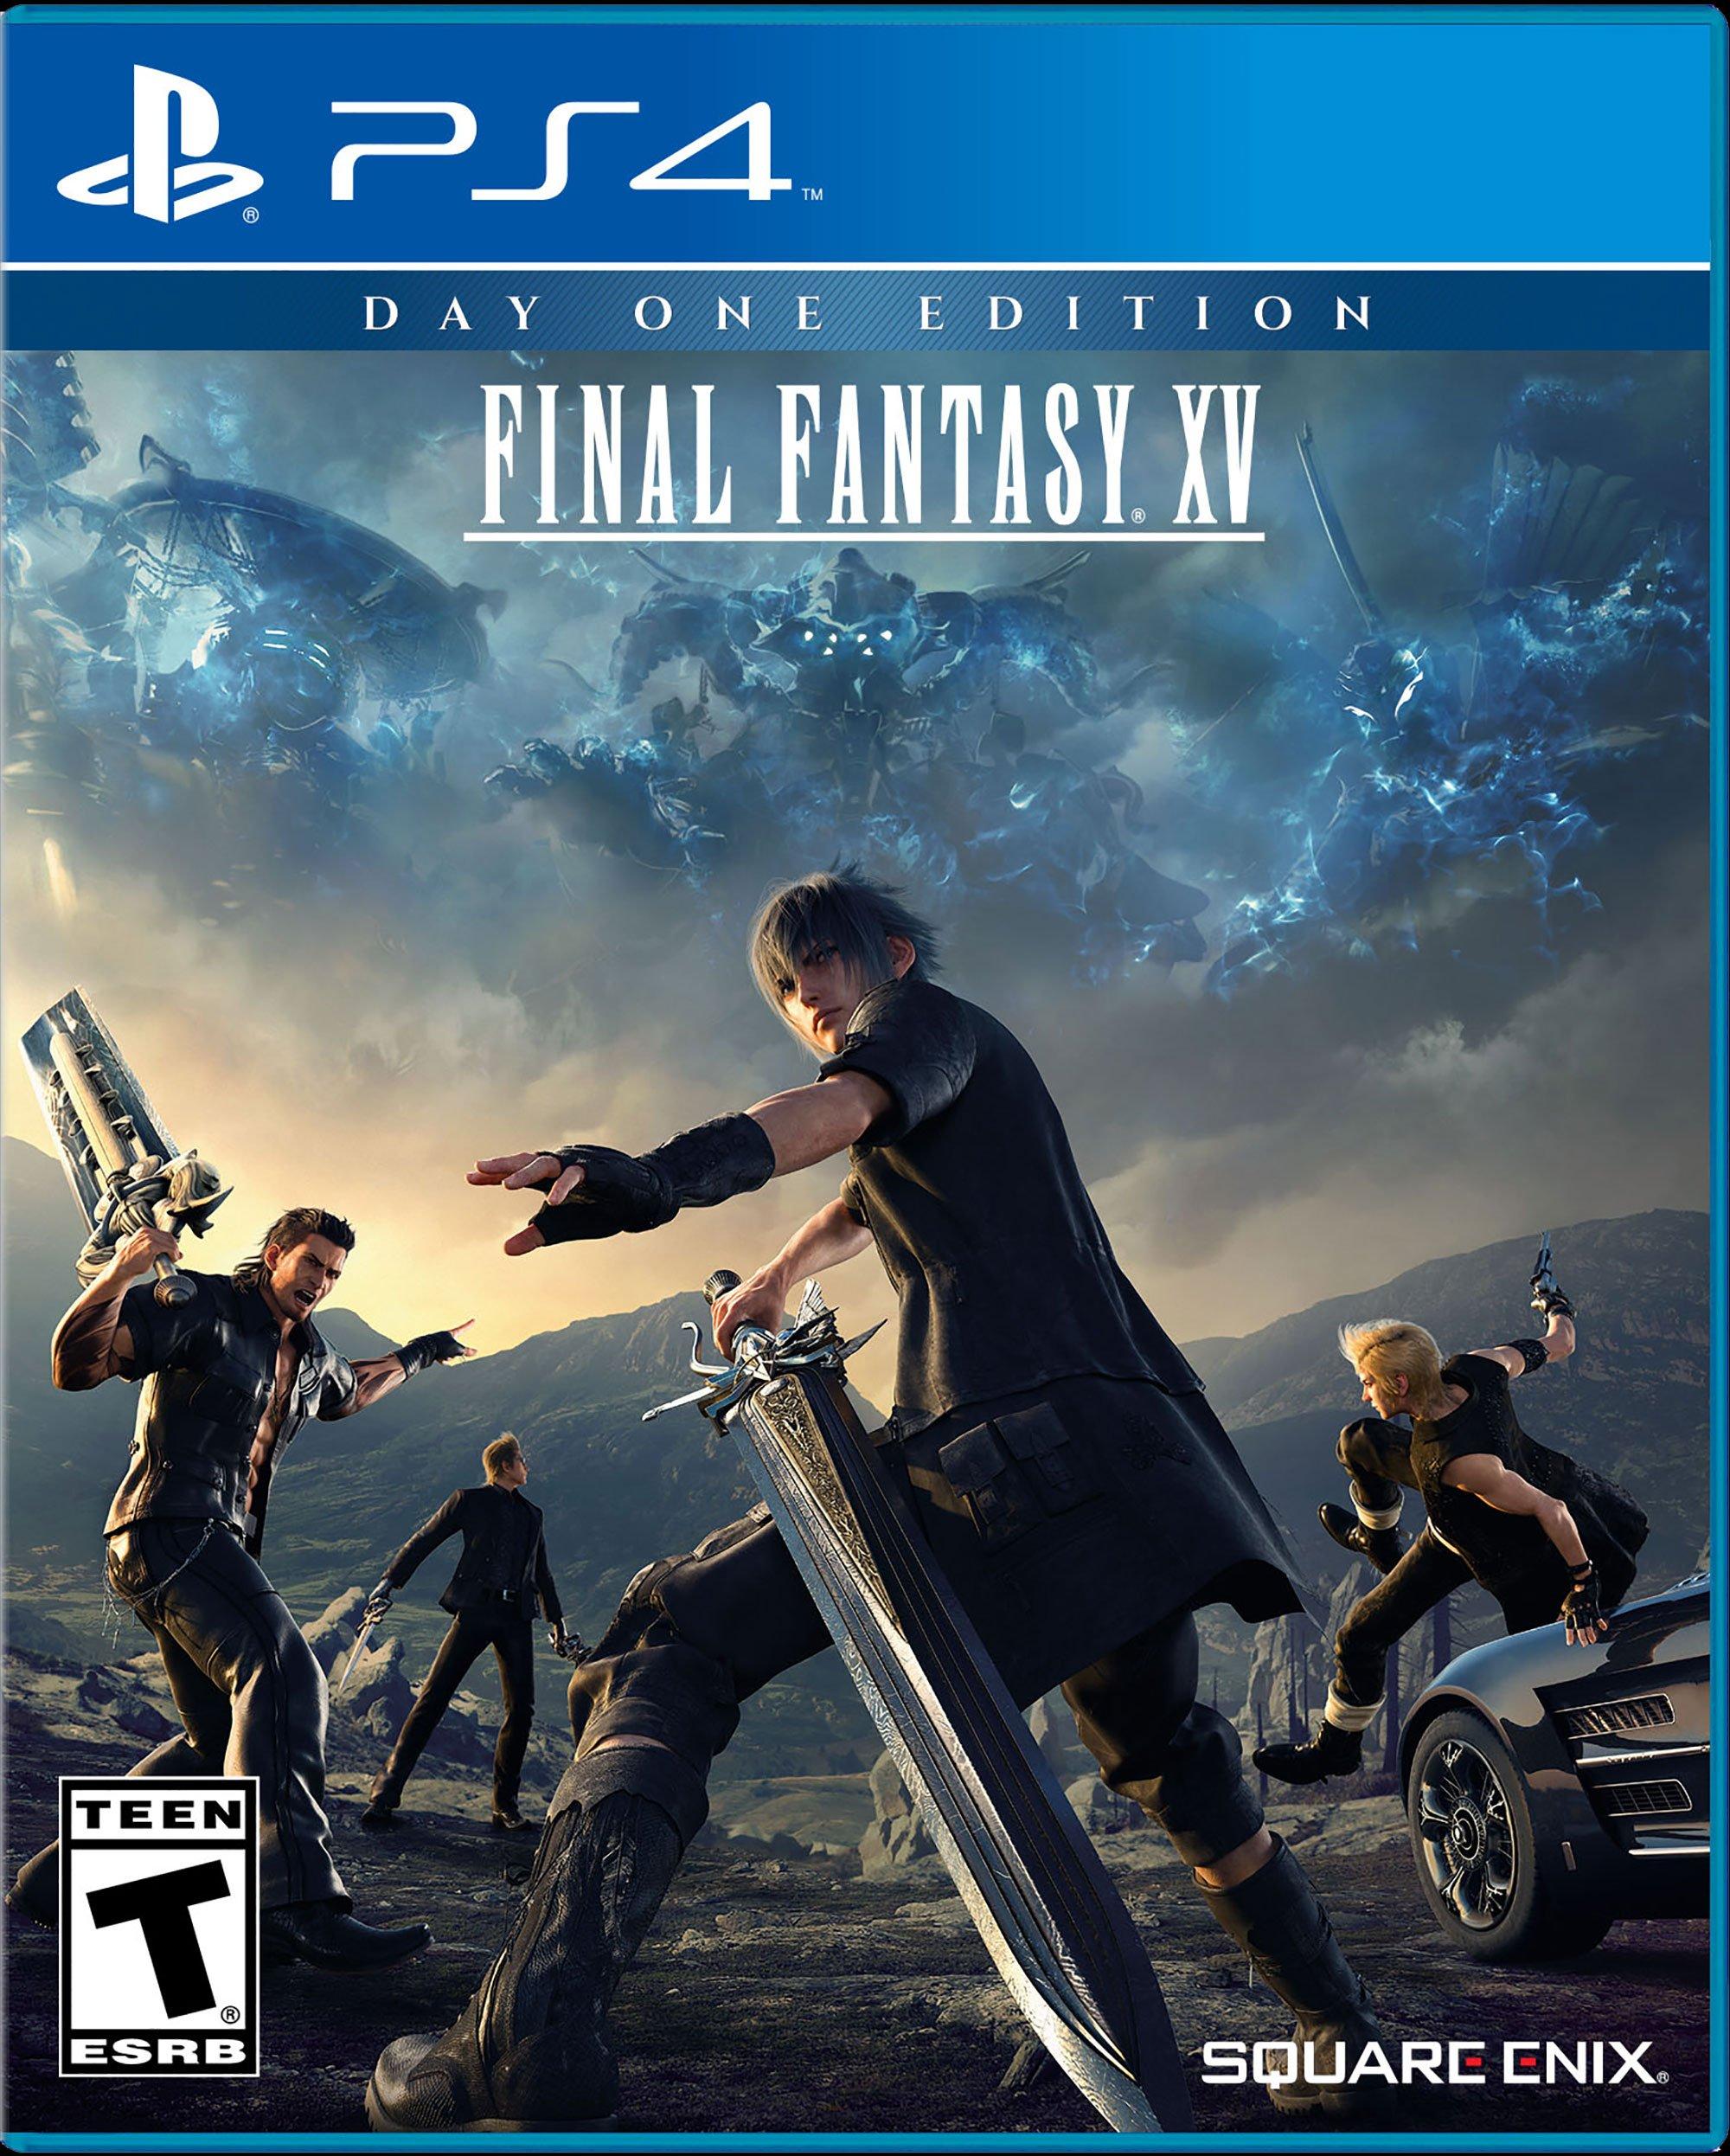 Final Fantasy XV Royal Edition - PlayStation 4 